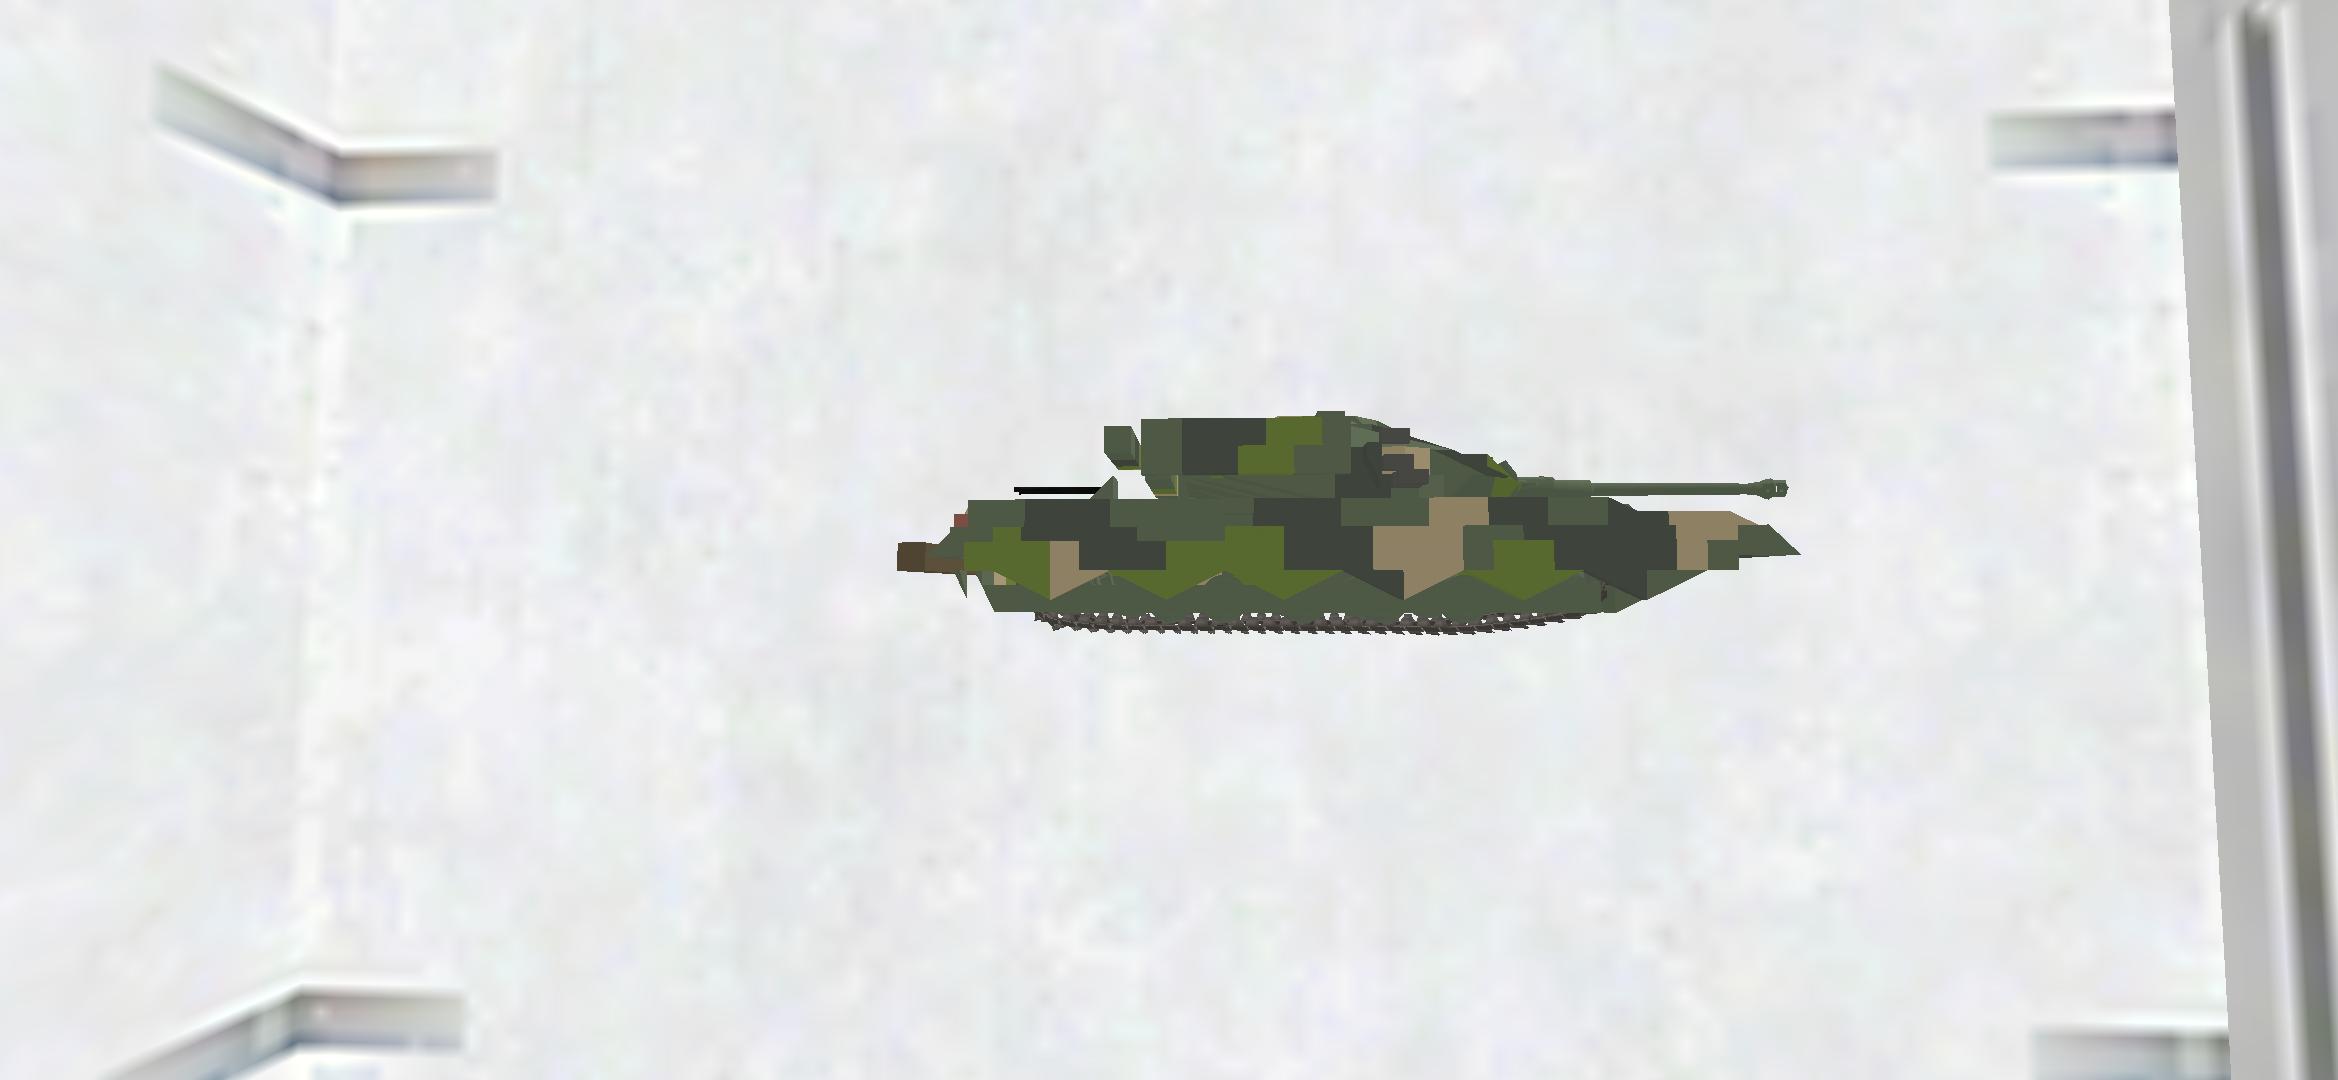 T-25